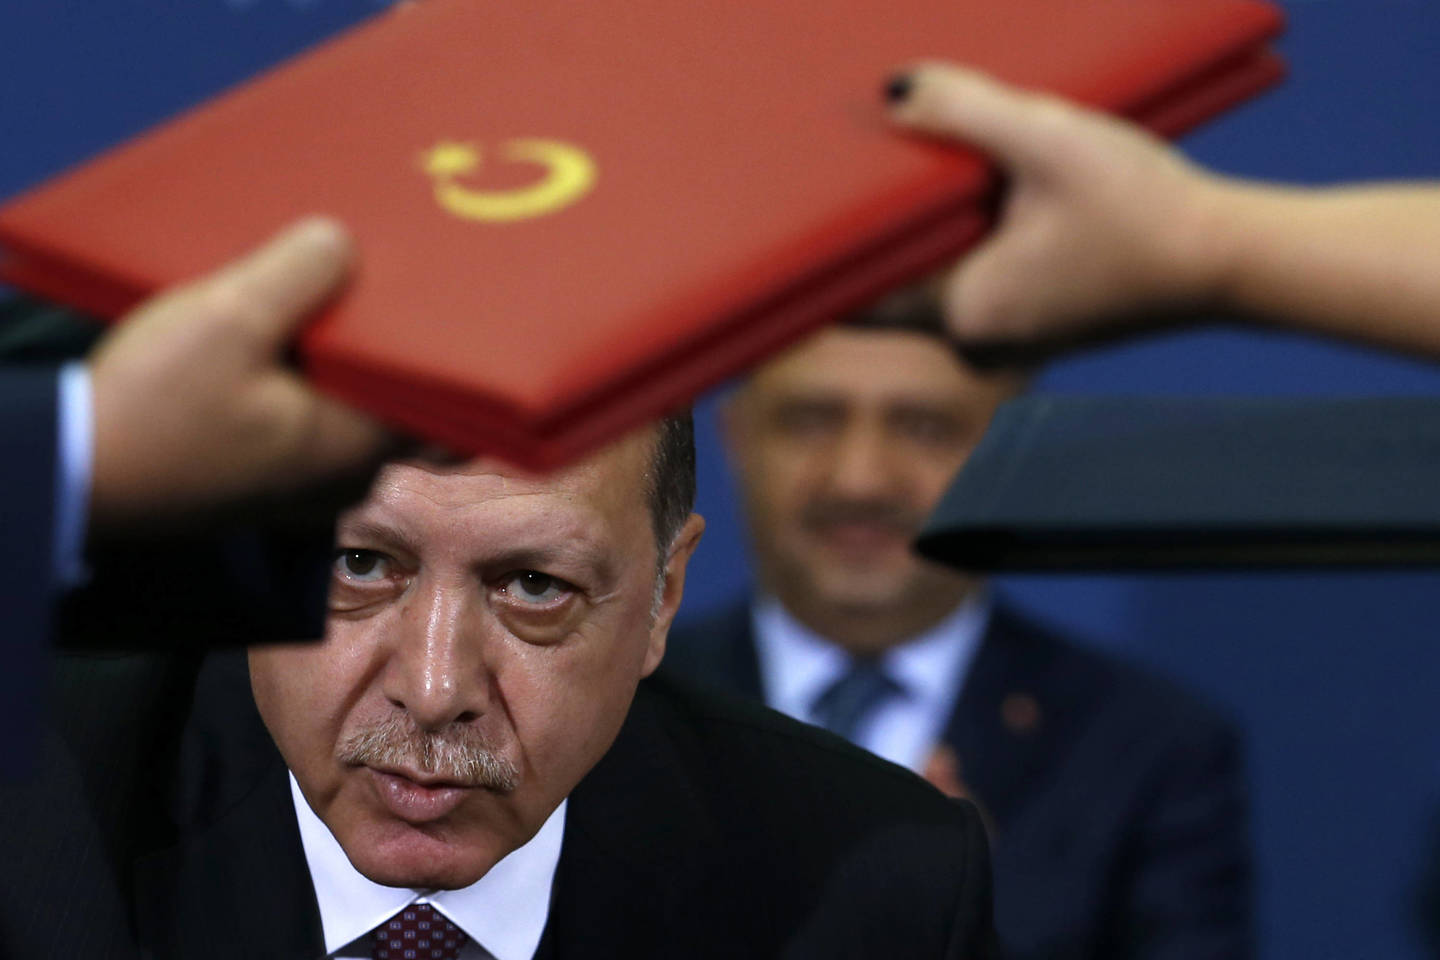  Turkijos prezidentas Recepas Tayyipas Erdoganas. Spalio 10 d., Belgradas (Serbija).<br> AP nuotr.